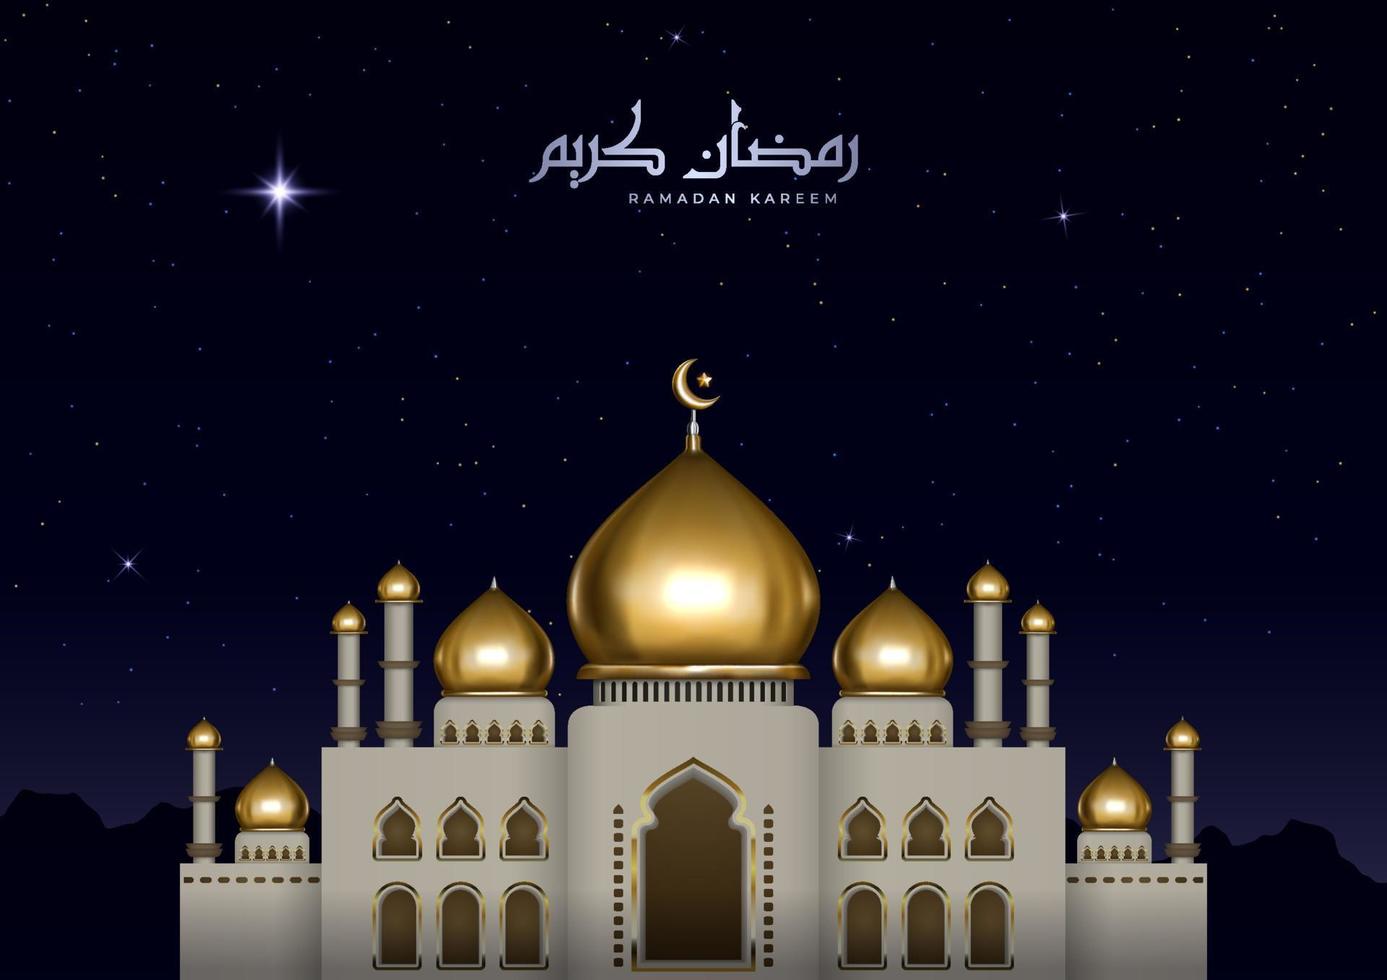 hermosa ilustración islámica con caligrafía árabe y mezquita dorada. tarjeta de felicitación ramadan kareem realista con vista nocturna vector